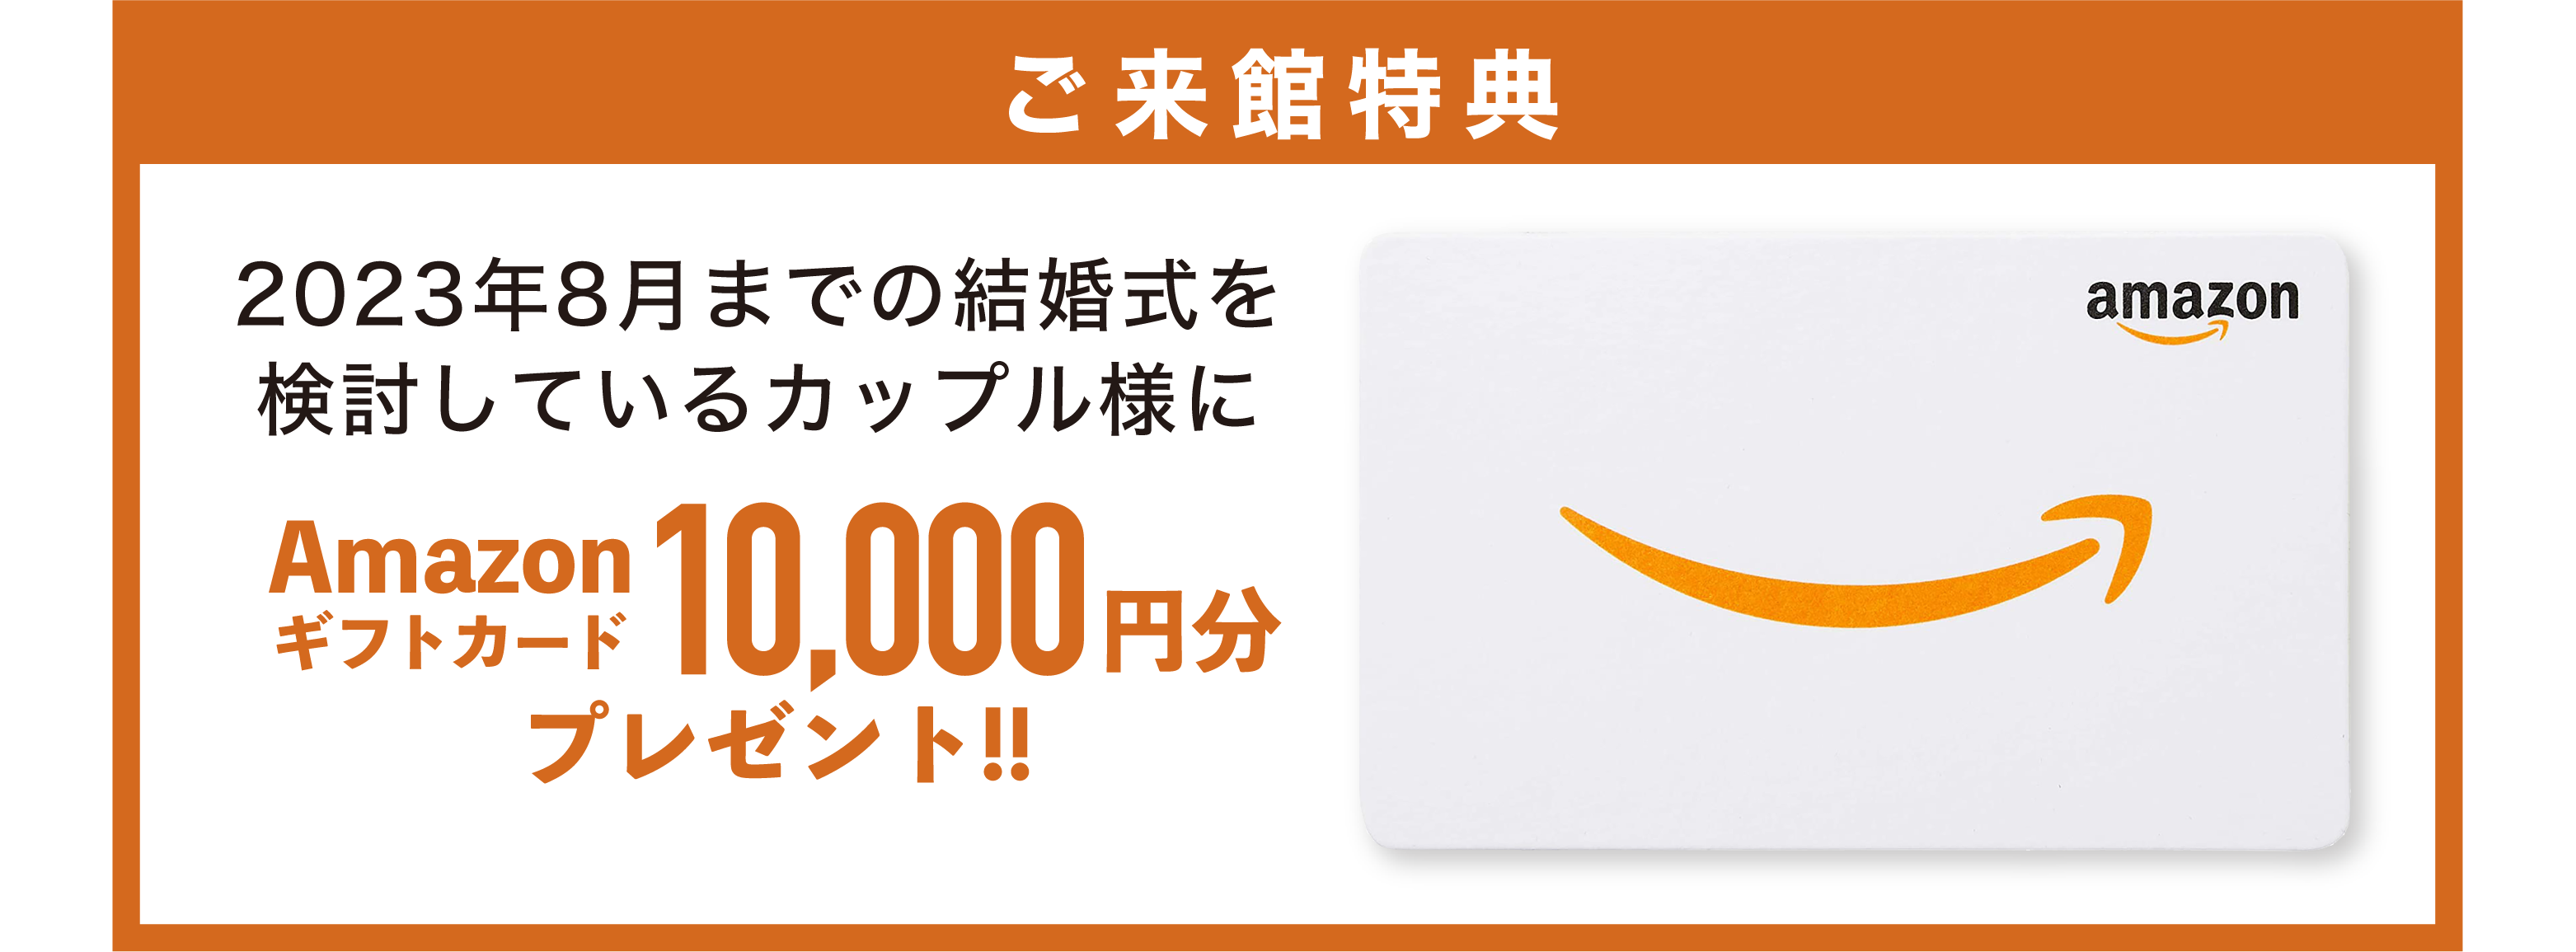 2023年8月までの結婚式をご検討のカップル様に「Amazonギフトカード1万円分」プレゼント